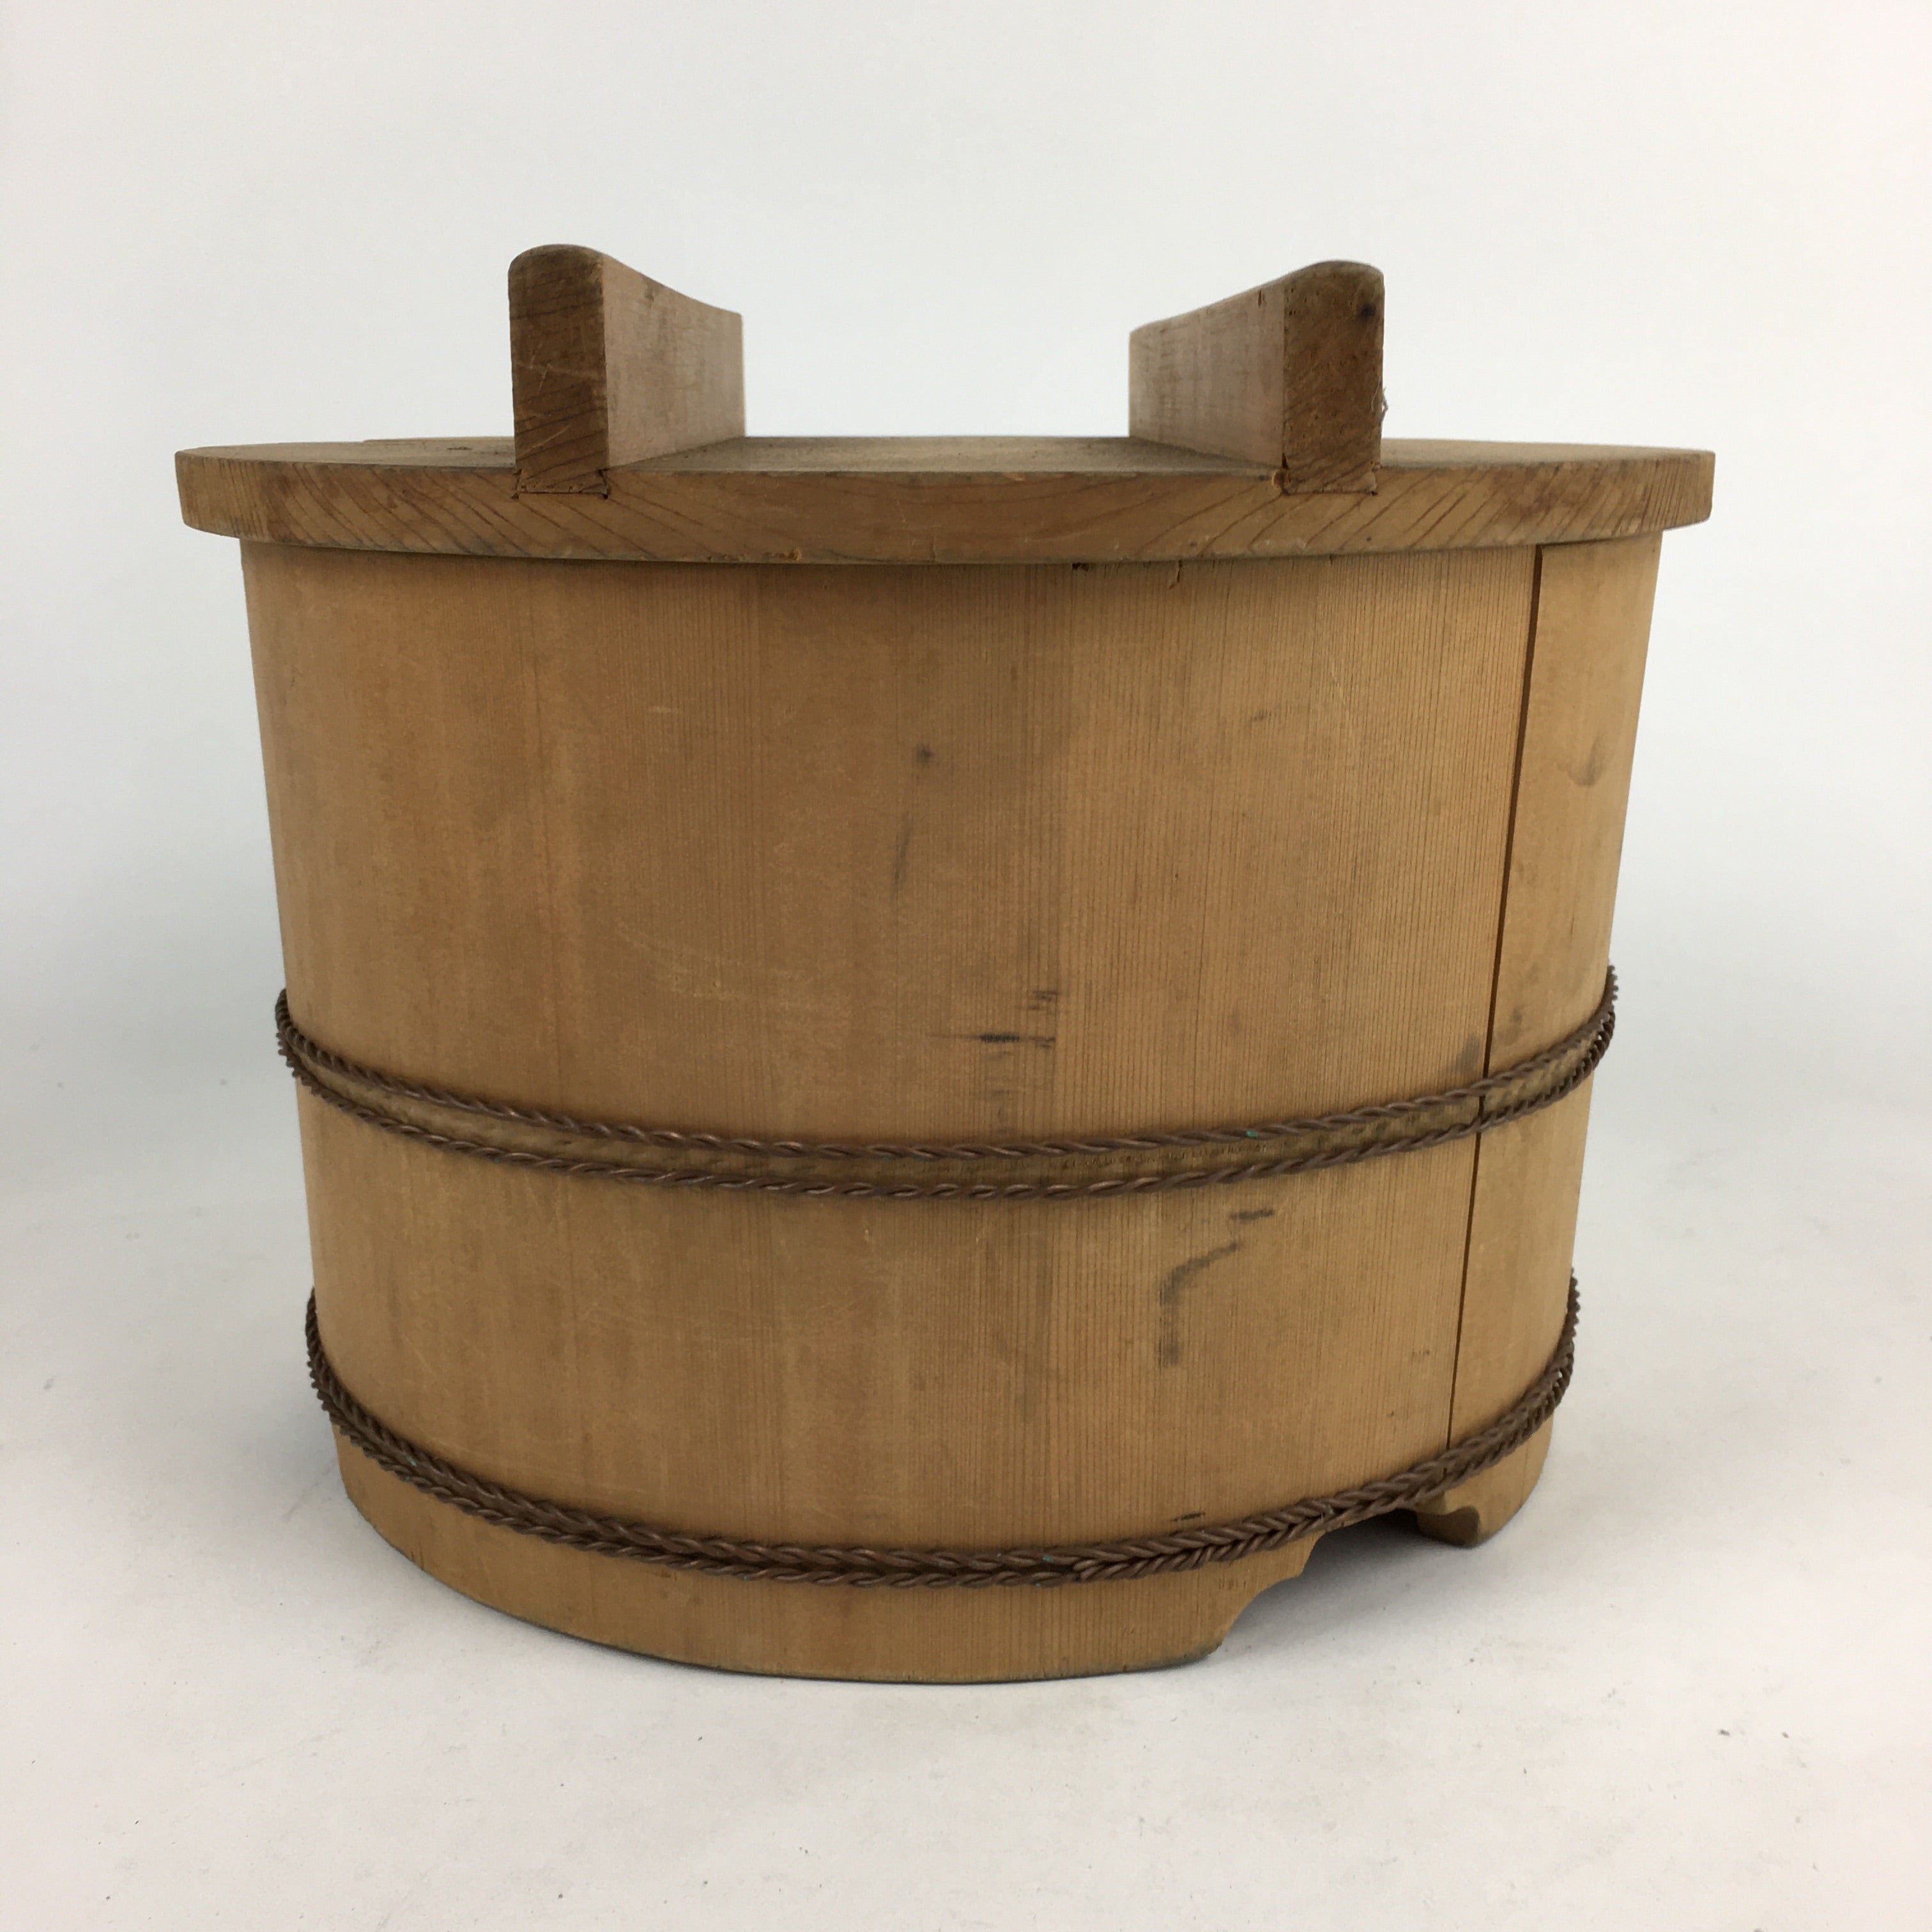 Japanese Handmade Wooden Bucket Oke Vtg Sushi Rice Water Pickles JK280